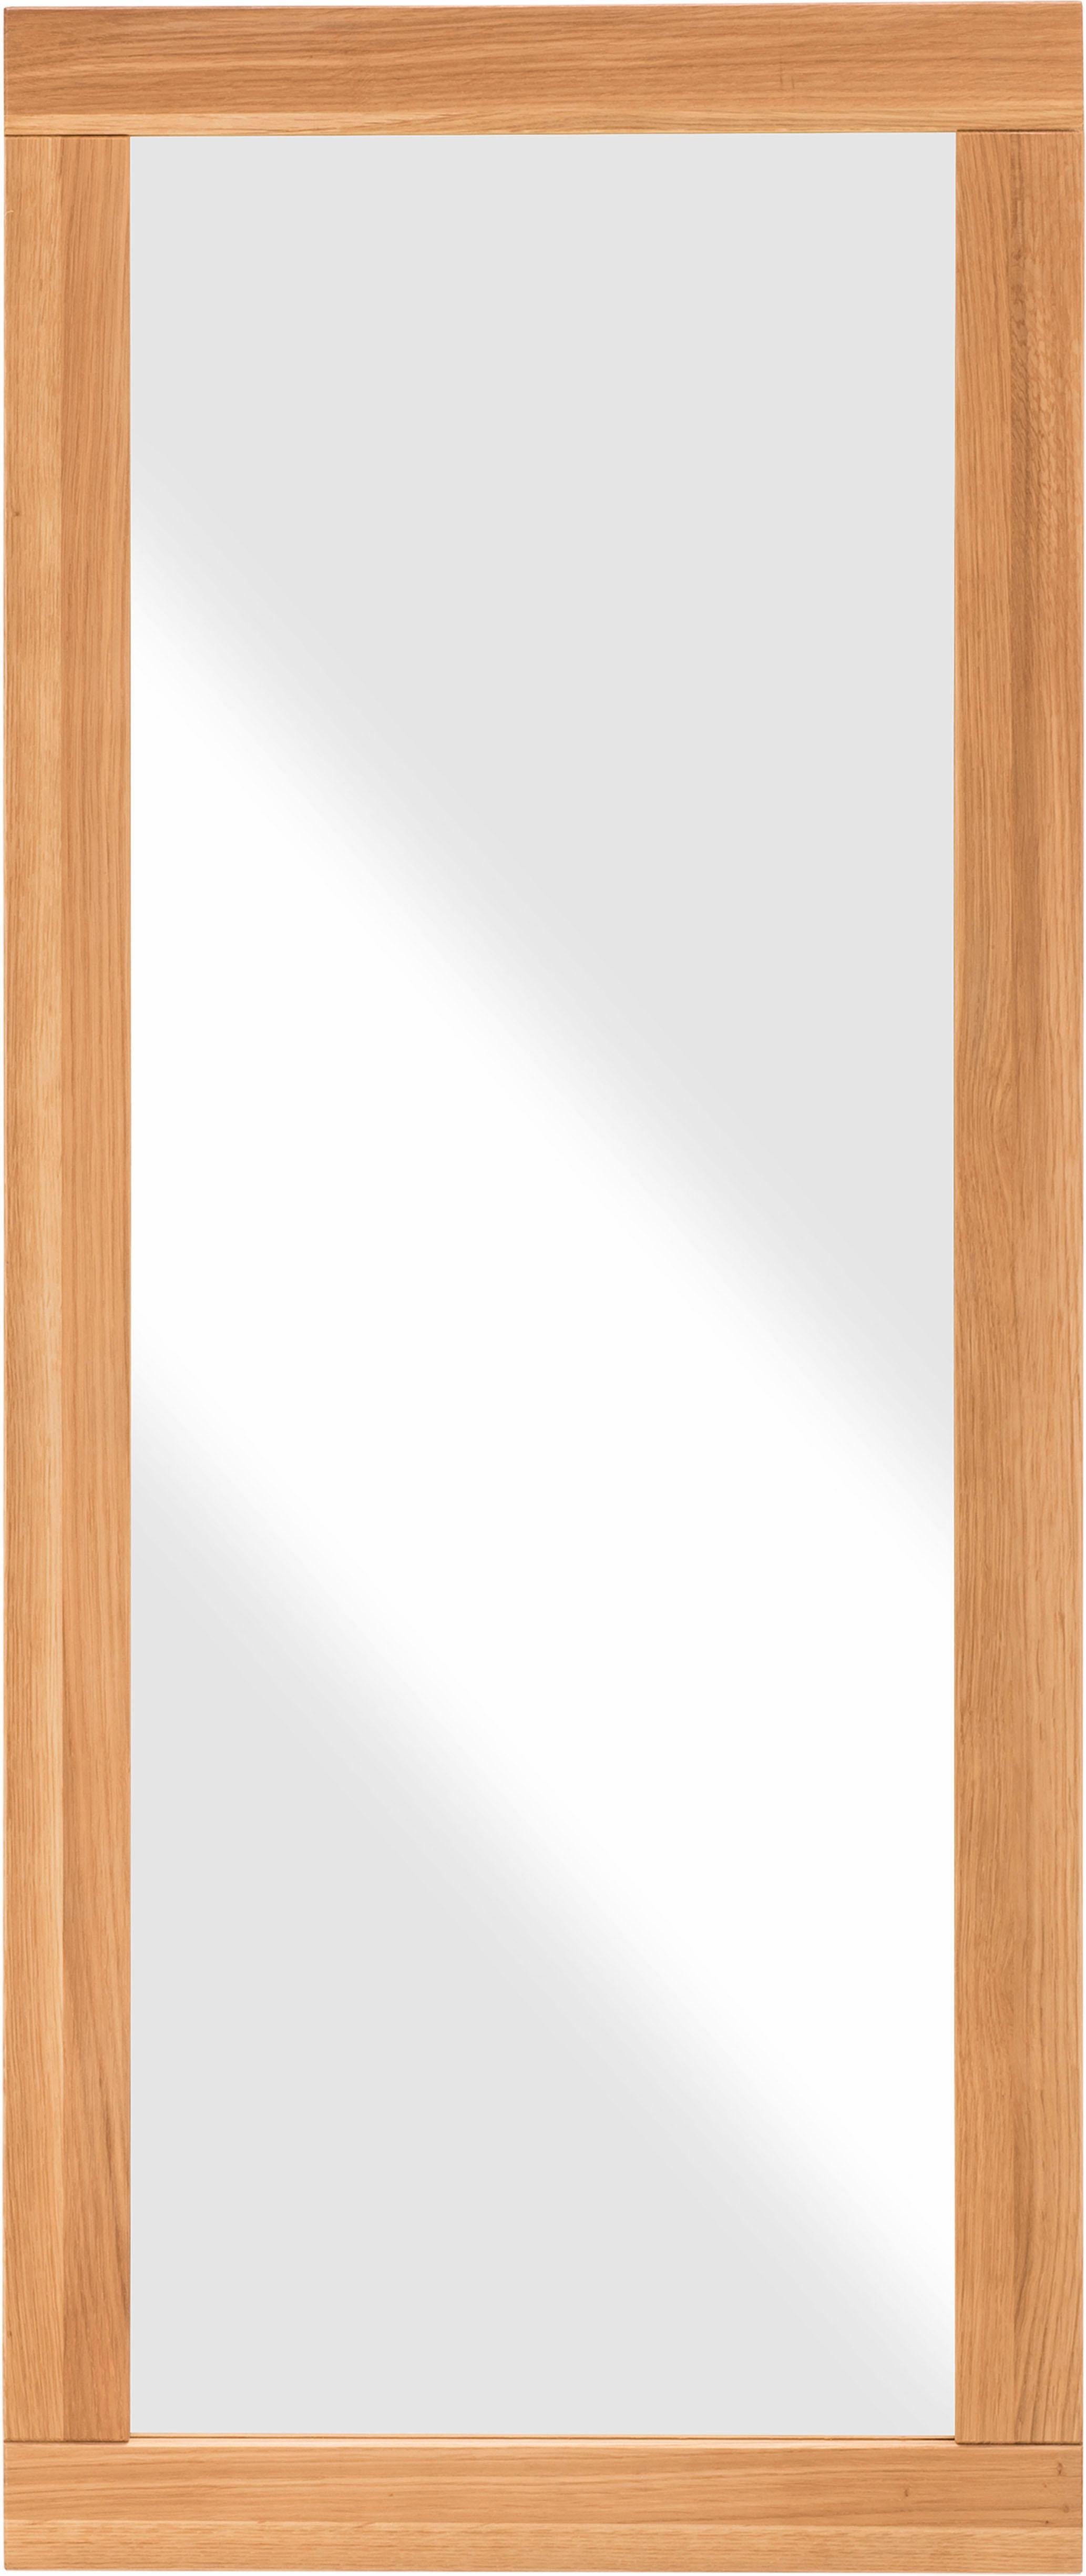 Home affaire Wandspiegel Dura, aus FSC-zertifiziertem Massivholz, Breite 50 cm wildeiche